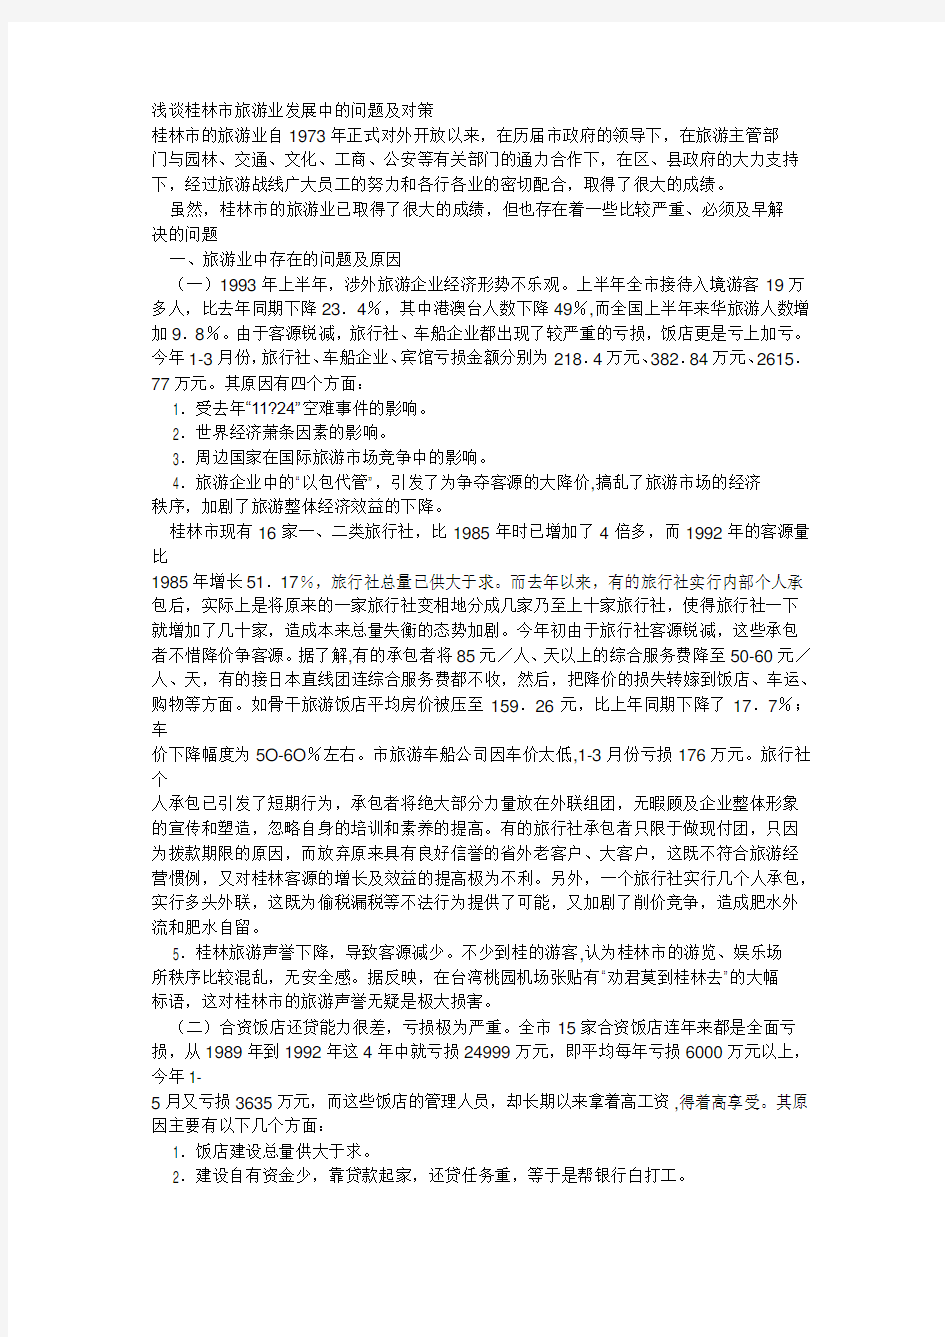 桂林市旅游业发展中的问题及对策教案资料